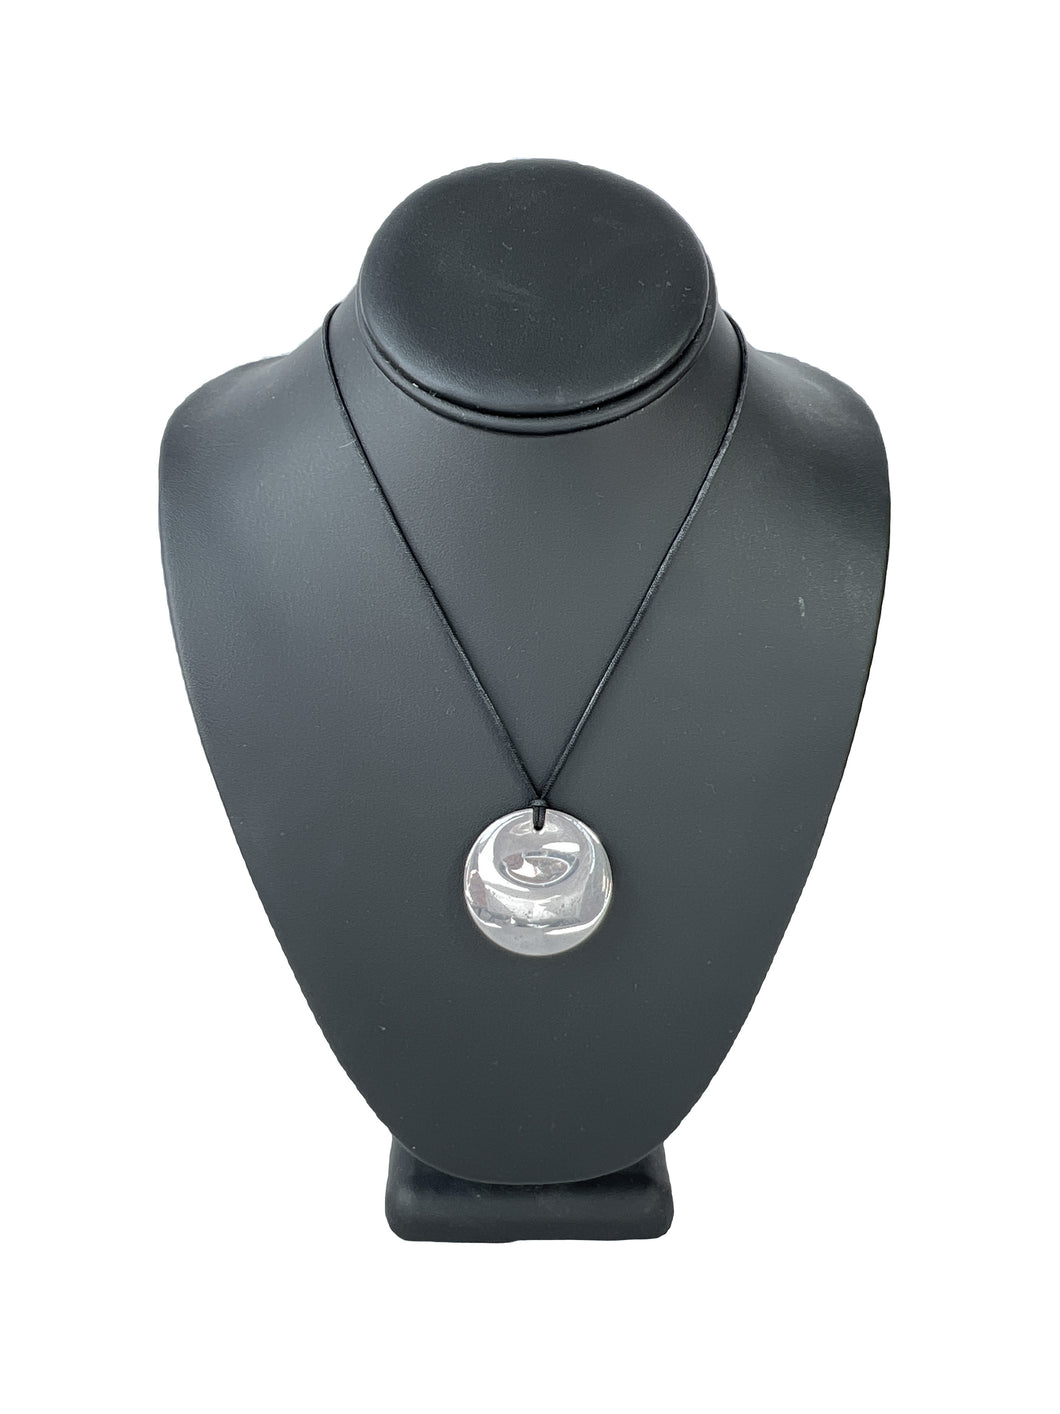 Tiffany & Co Elsa Peretti round silver pendant on cord